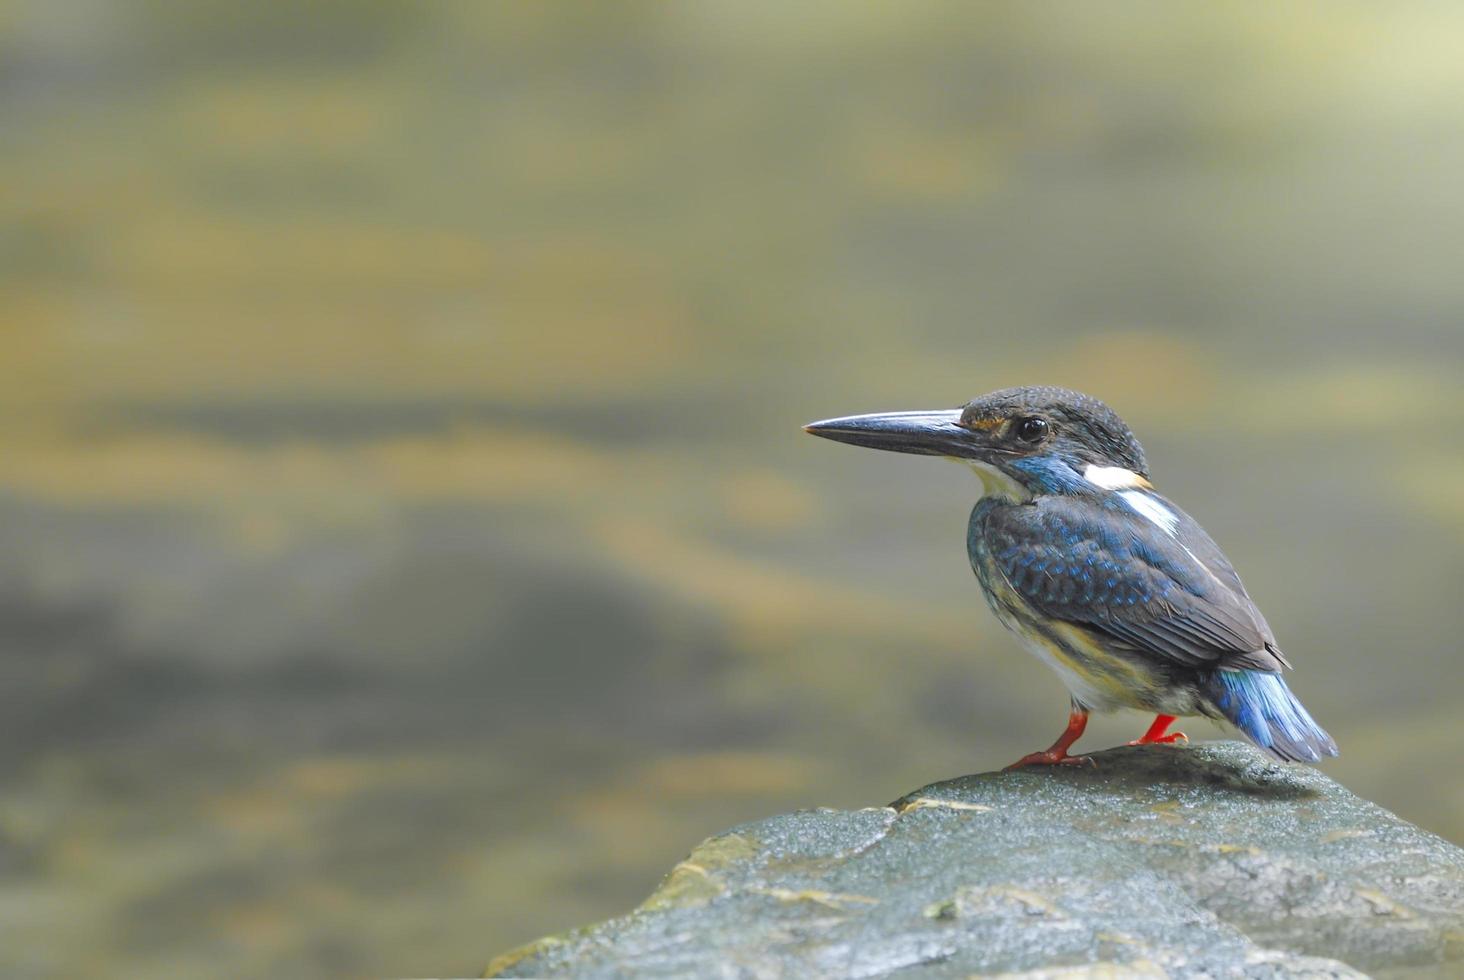 oiseau martin-pêcheur à bandes bleues perché sur la pierre photo